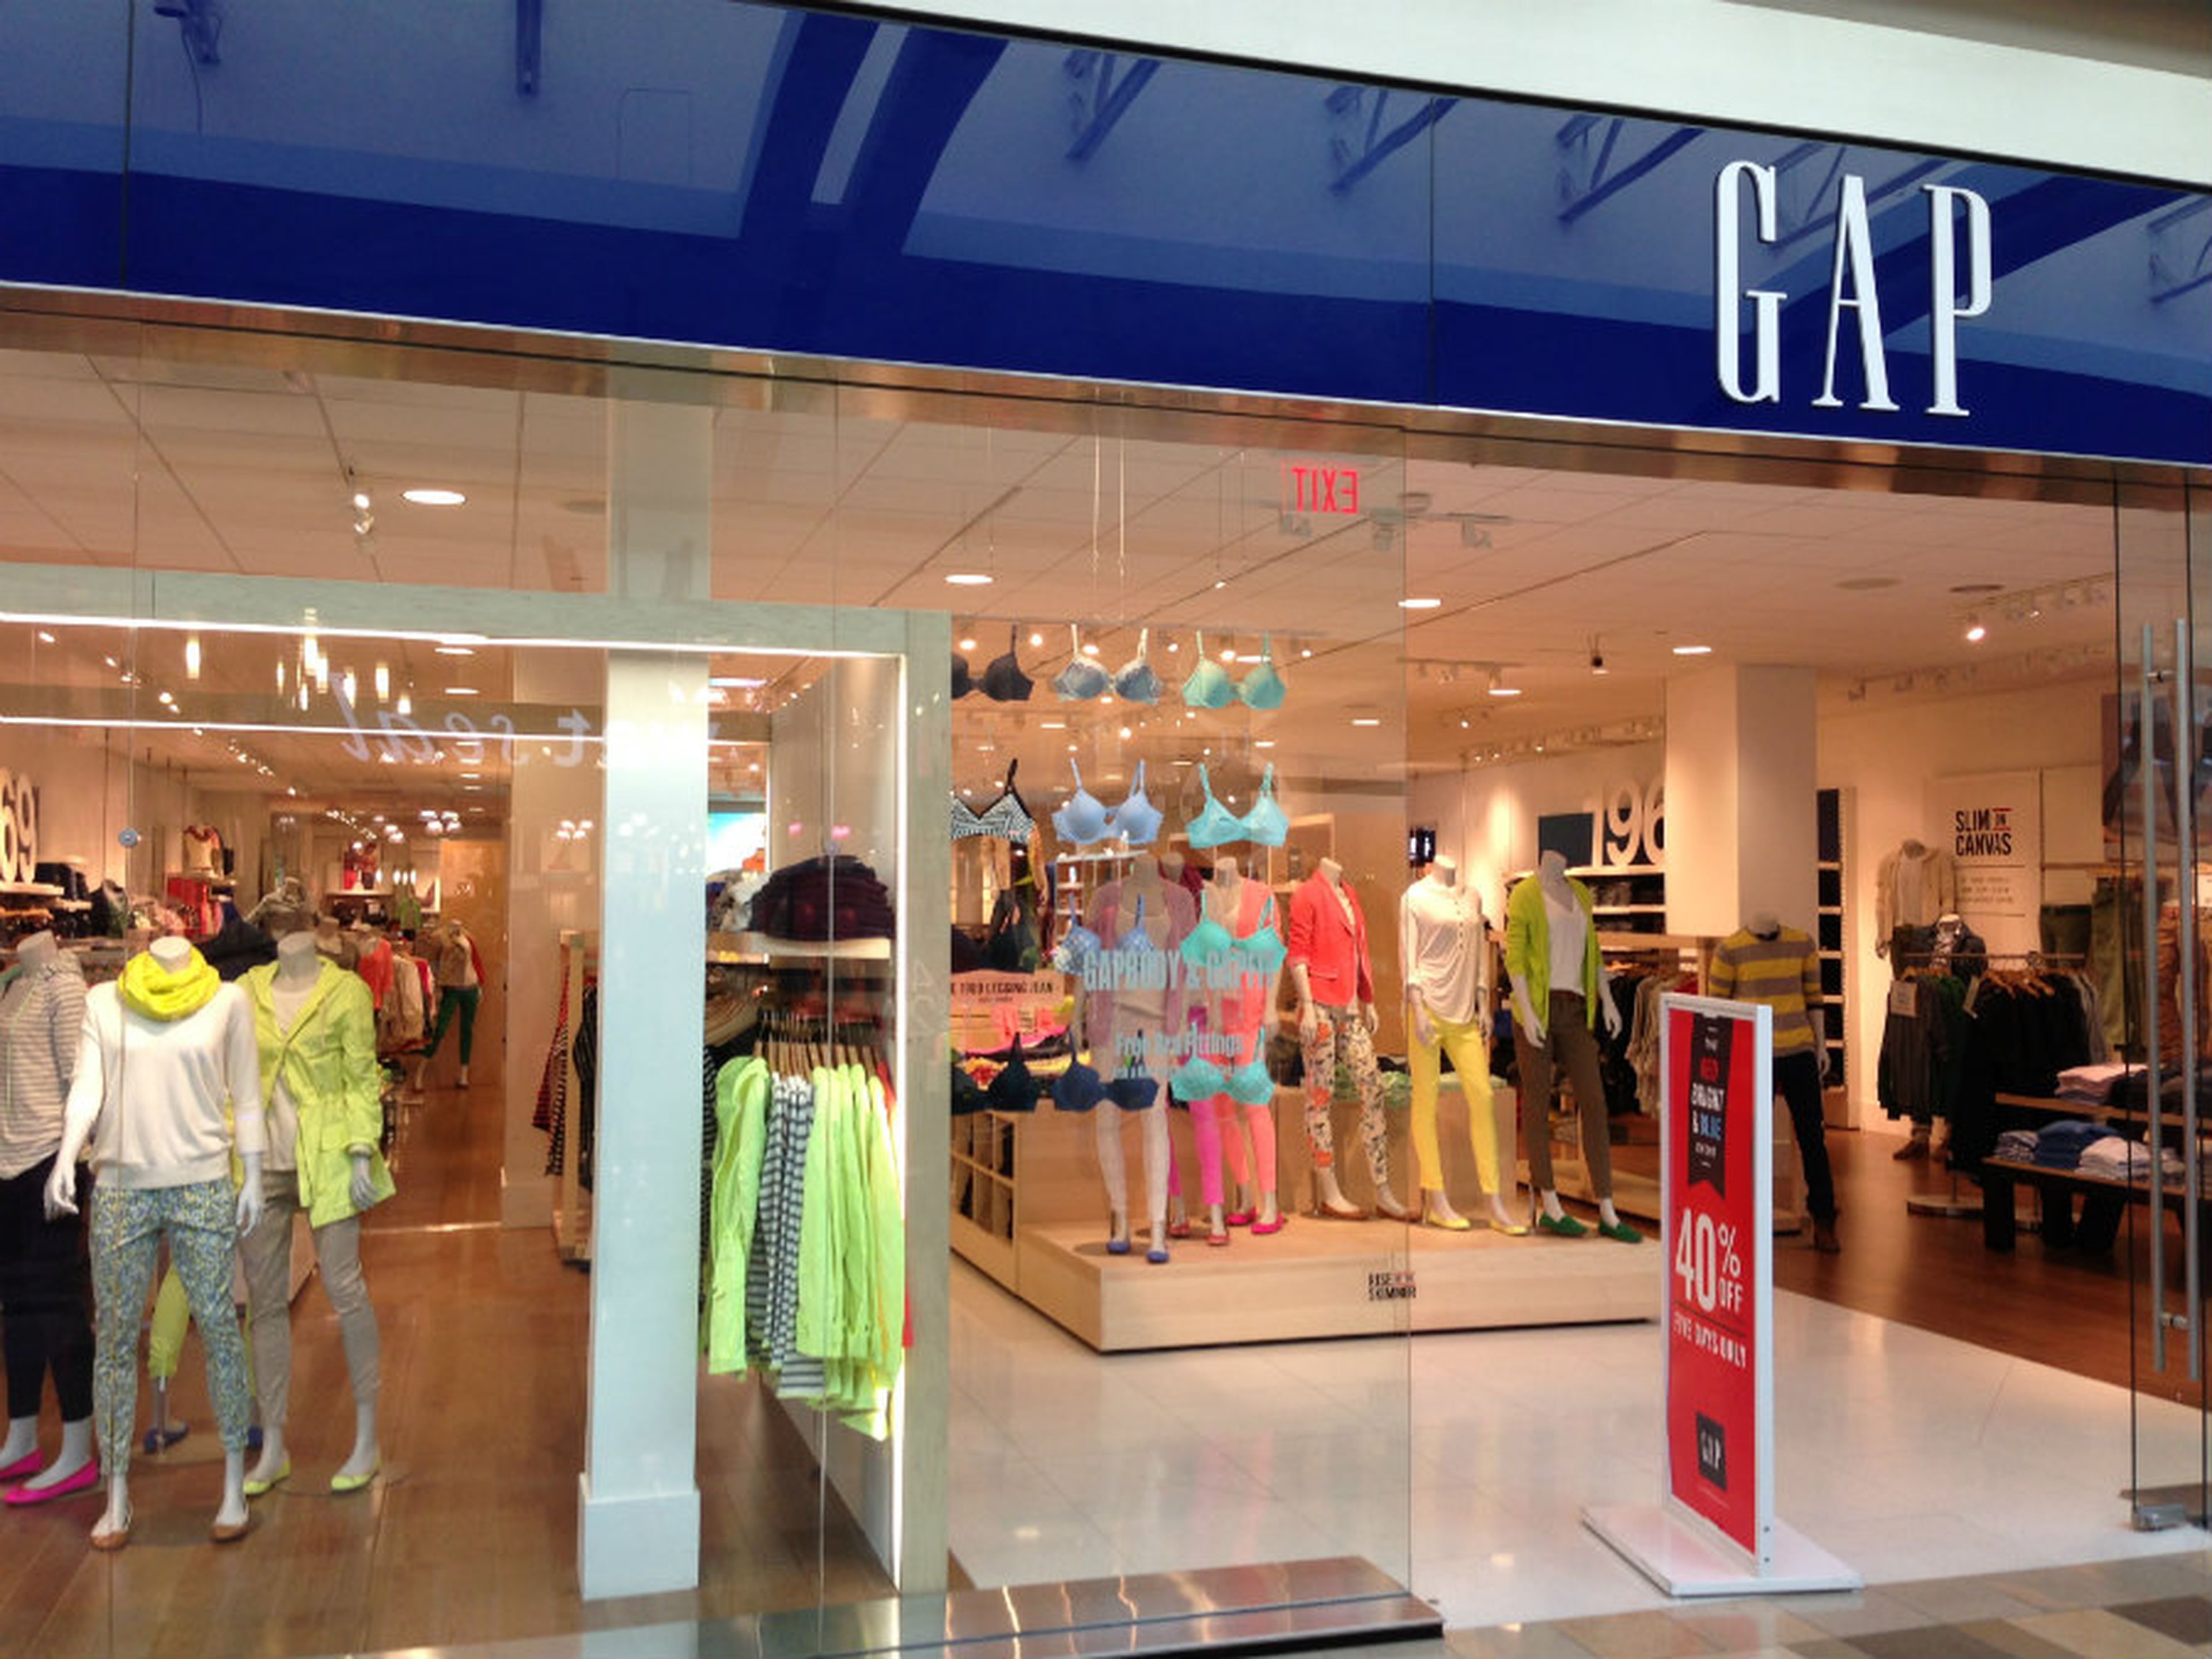 Tienda de Gap en el centro comercial North East Mall de Dallas (EE.UU.)